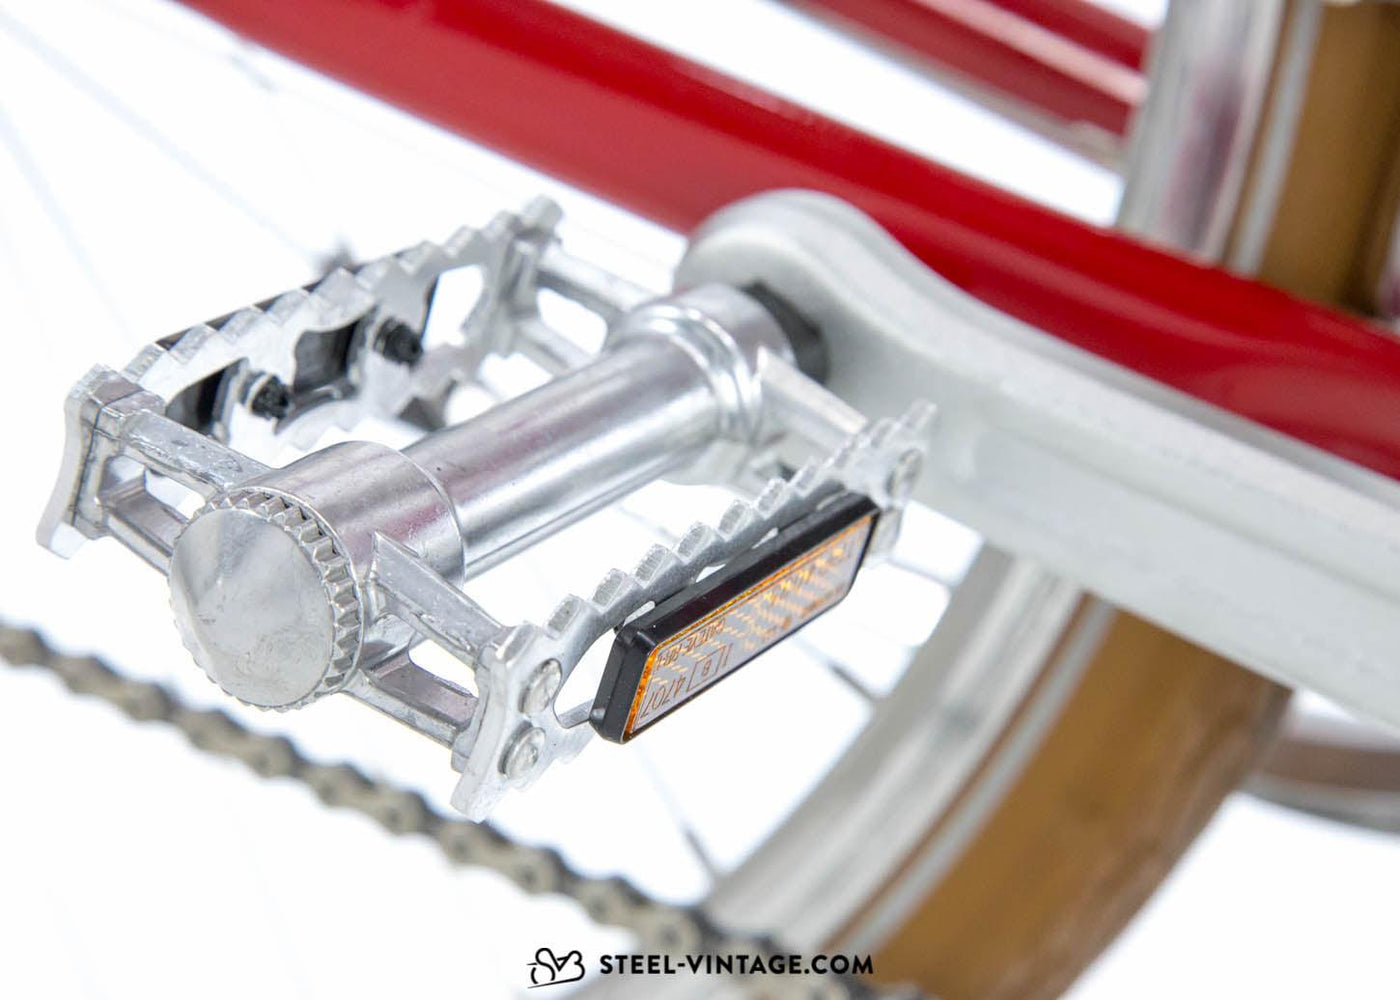 Classic SVB Mixte Ladies Bicycle - Steel Vintage Bikes